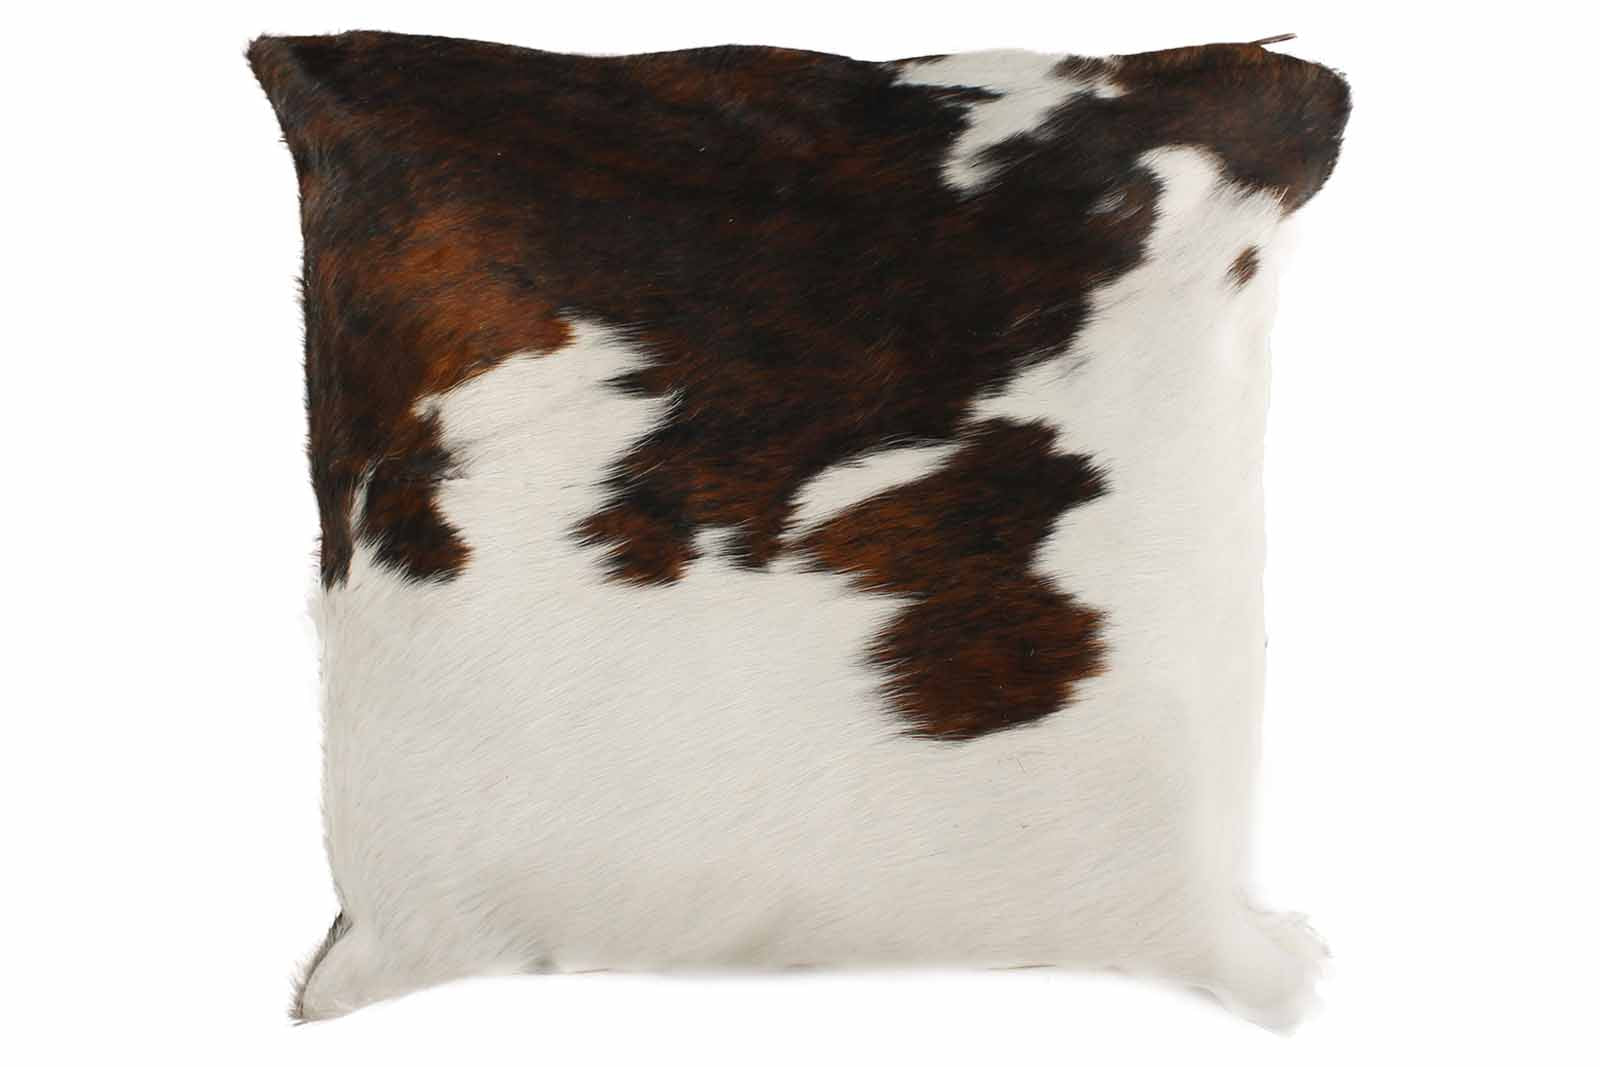 Tricolor Brazilian Cowhide Pillow